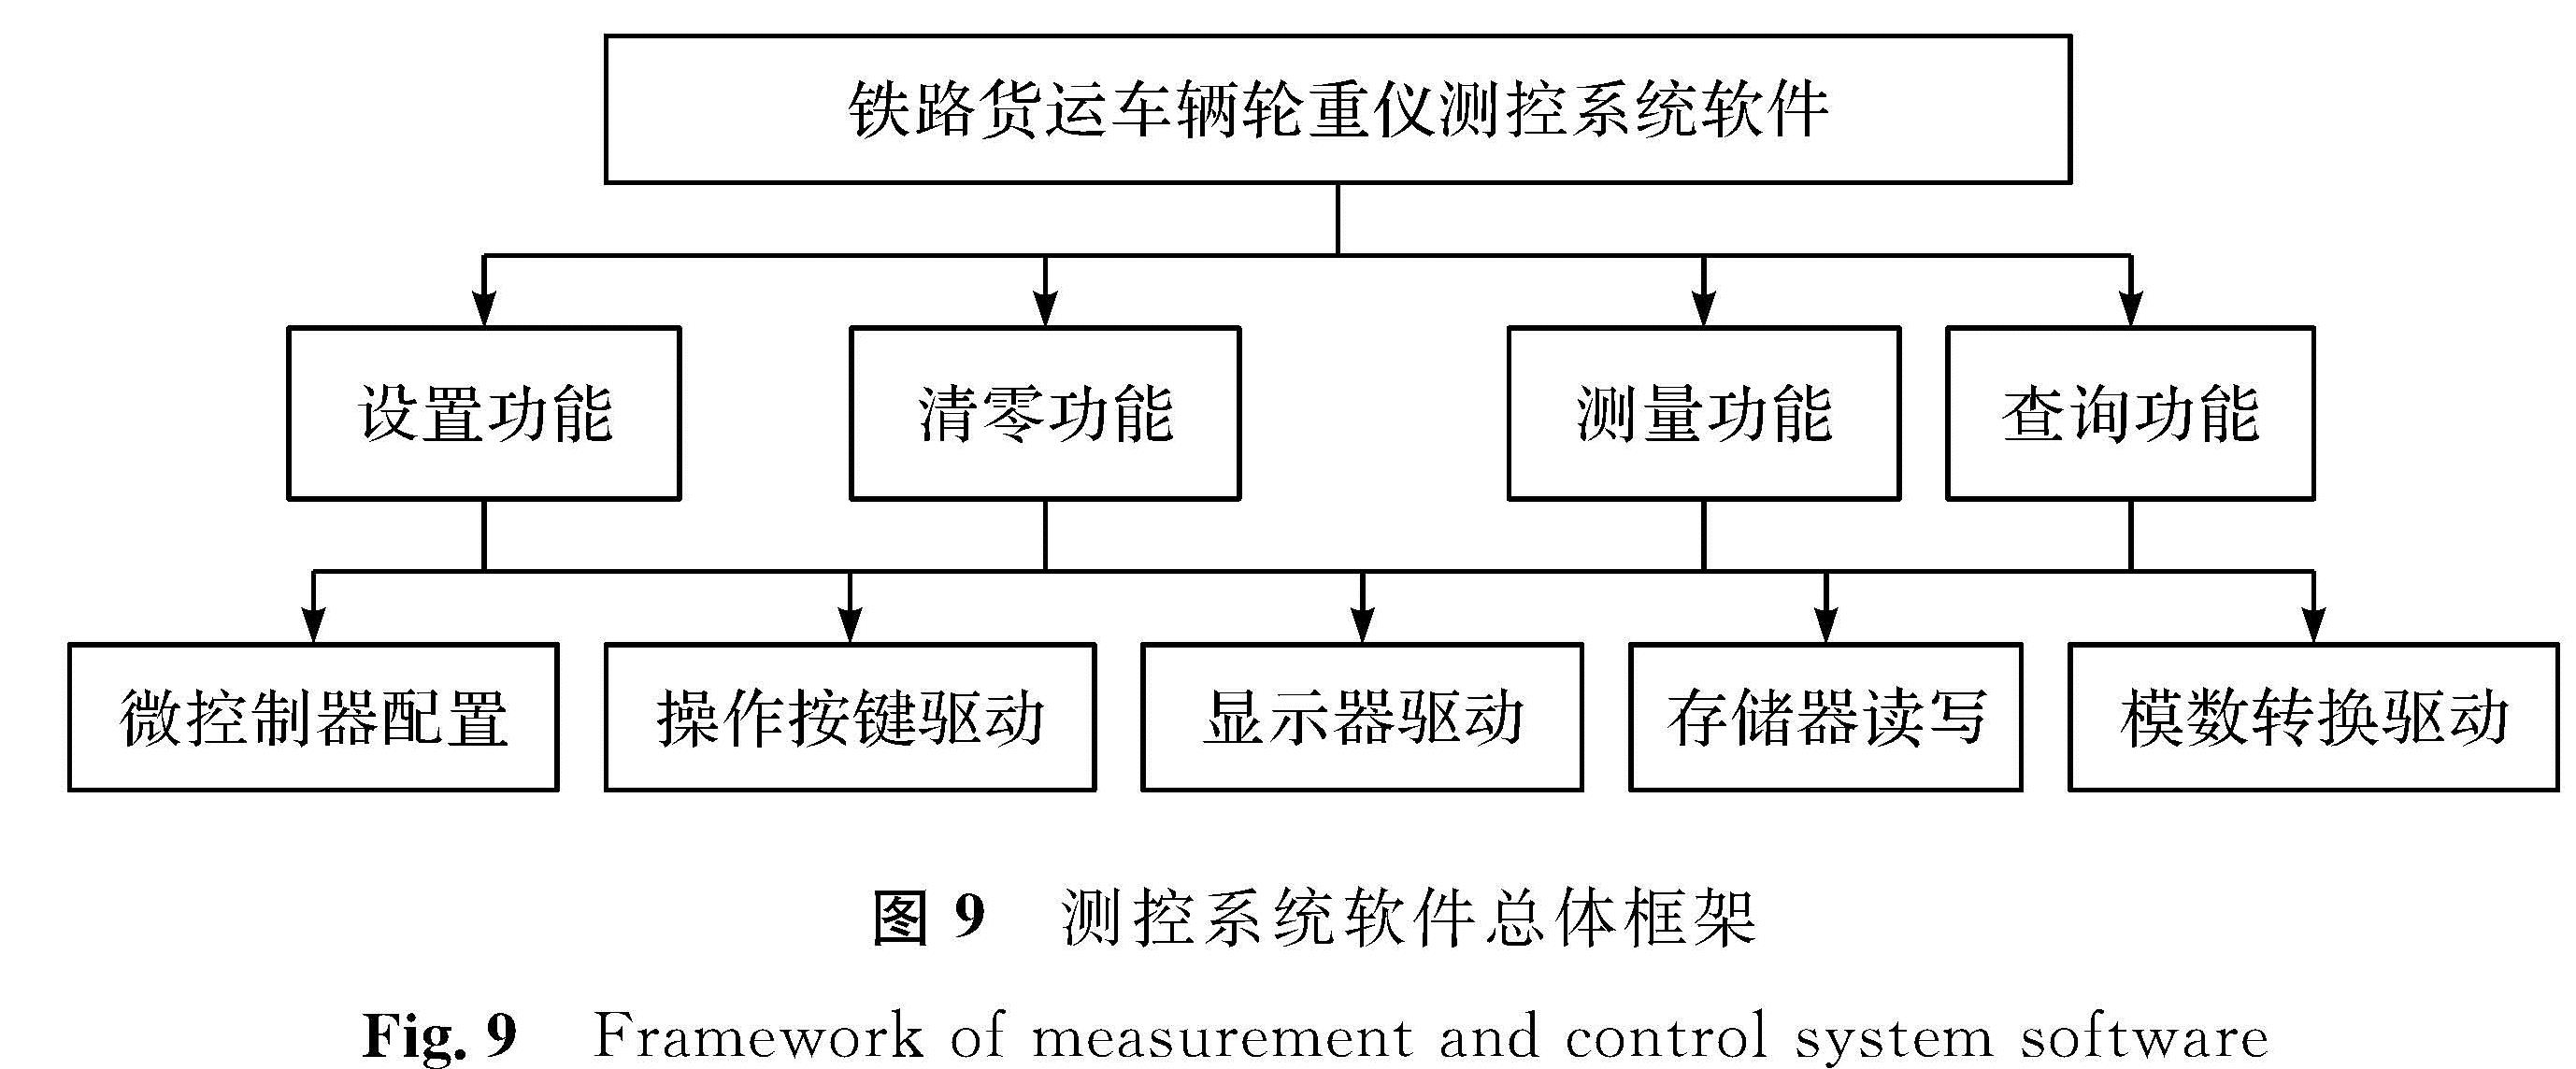 图9 测控系统软件总体框架<br/>Fig.9 Framework of measurement and control system software